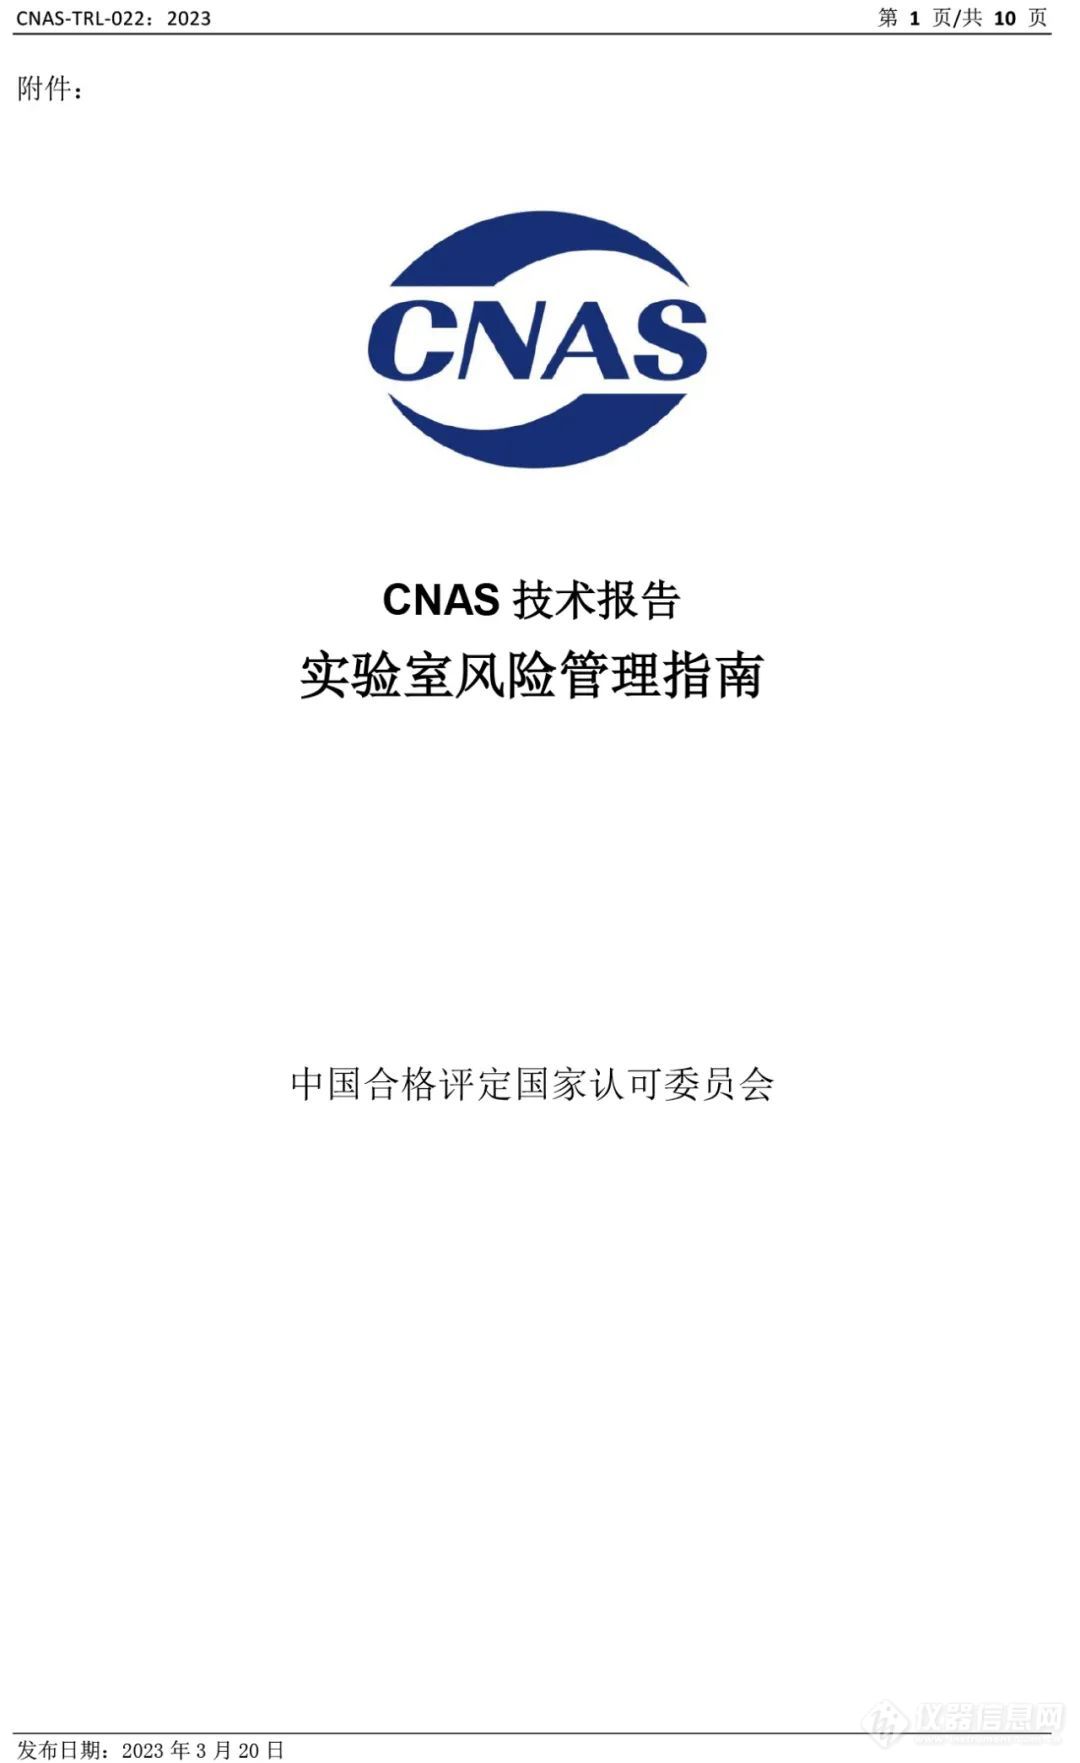 CNAS发布《实验室风险管理指南》